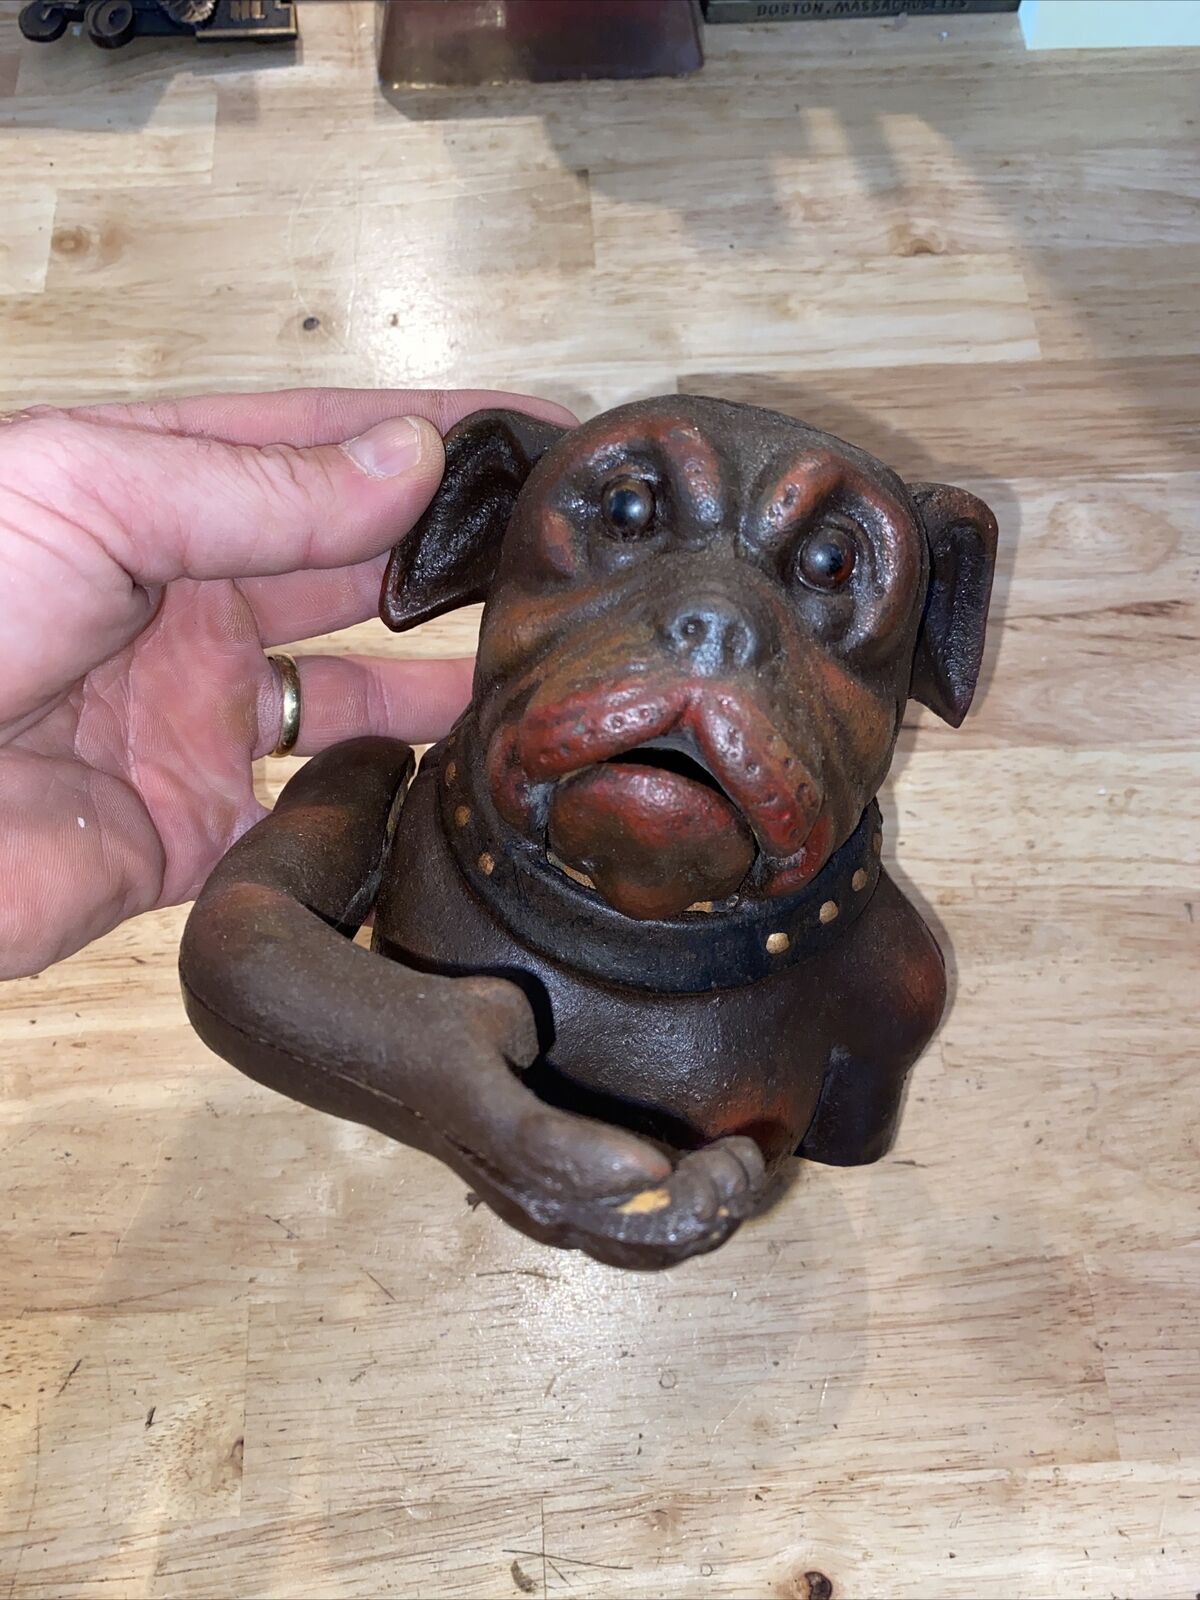 Bulldog Mechanical Piggy Bank Cast Iron 5+LB Junkyard Dog Patina K9 Collector